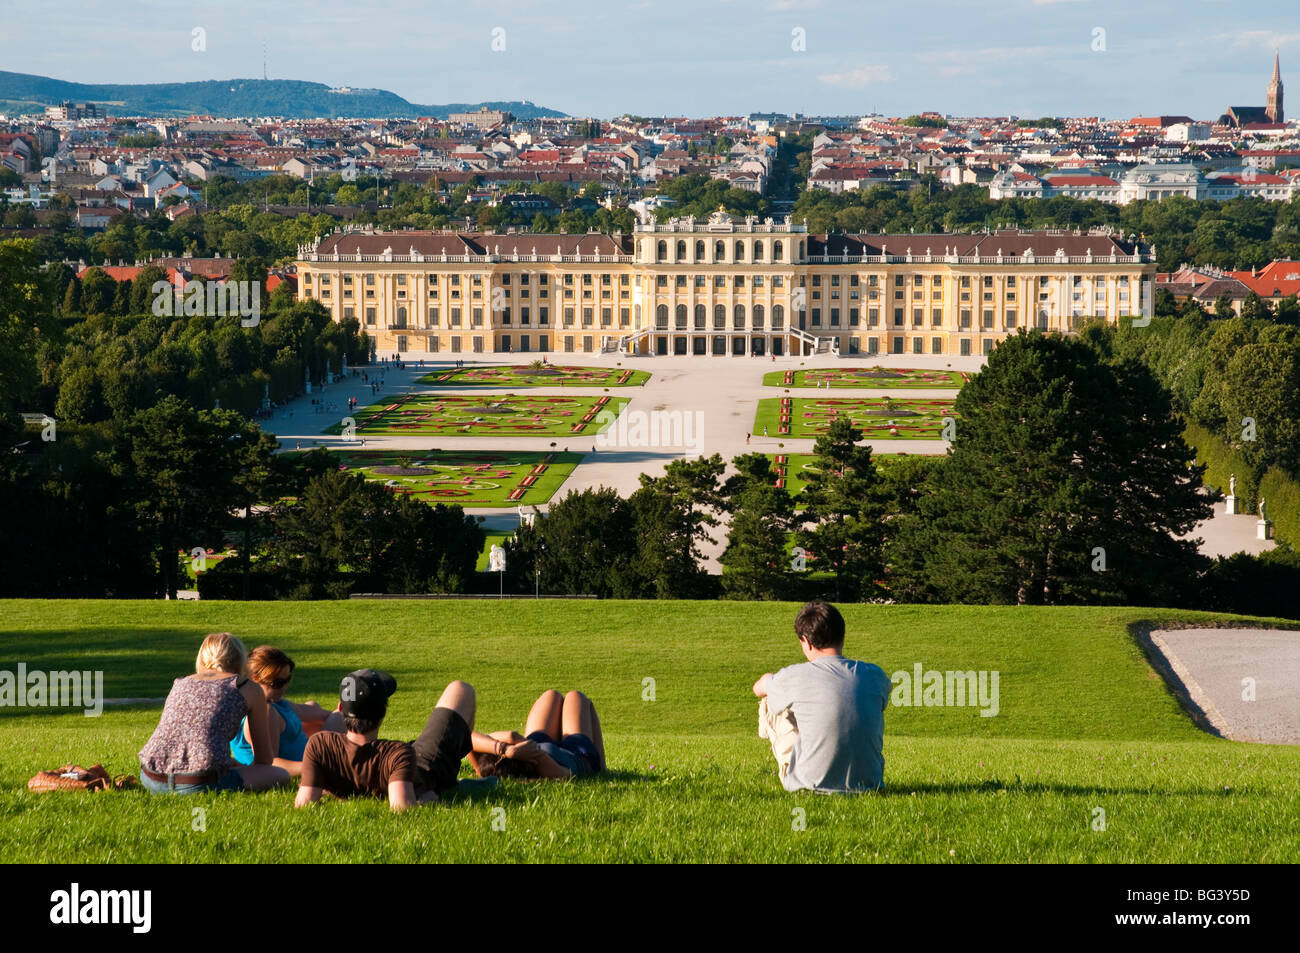 Gartenanlage Schloss Schönbrunn, Wien, Österreich | palace gardens, Schönbrunn Palace, Vienna, Austria  Stock Photo